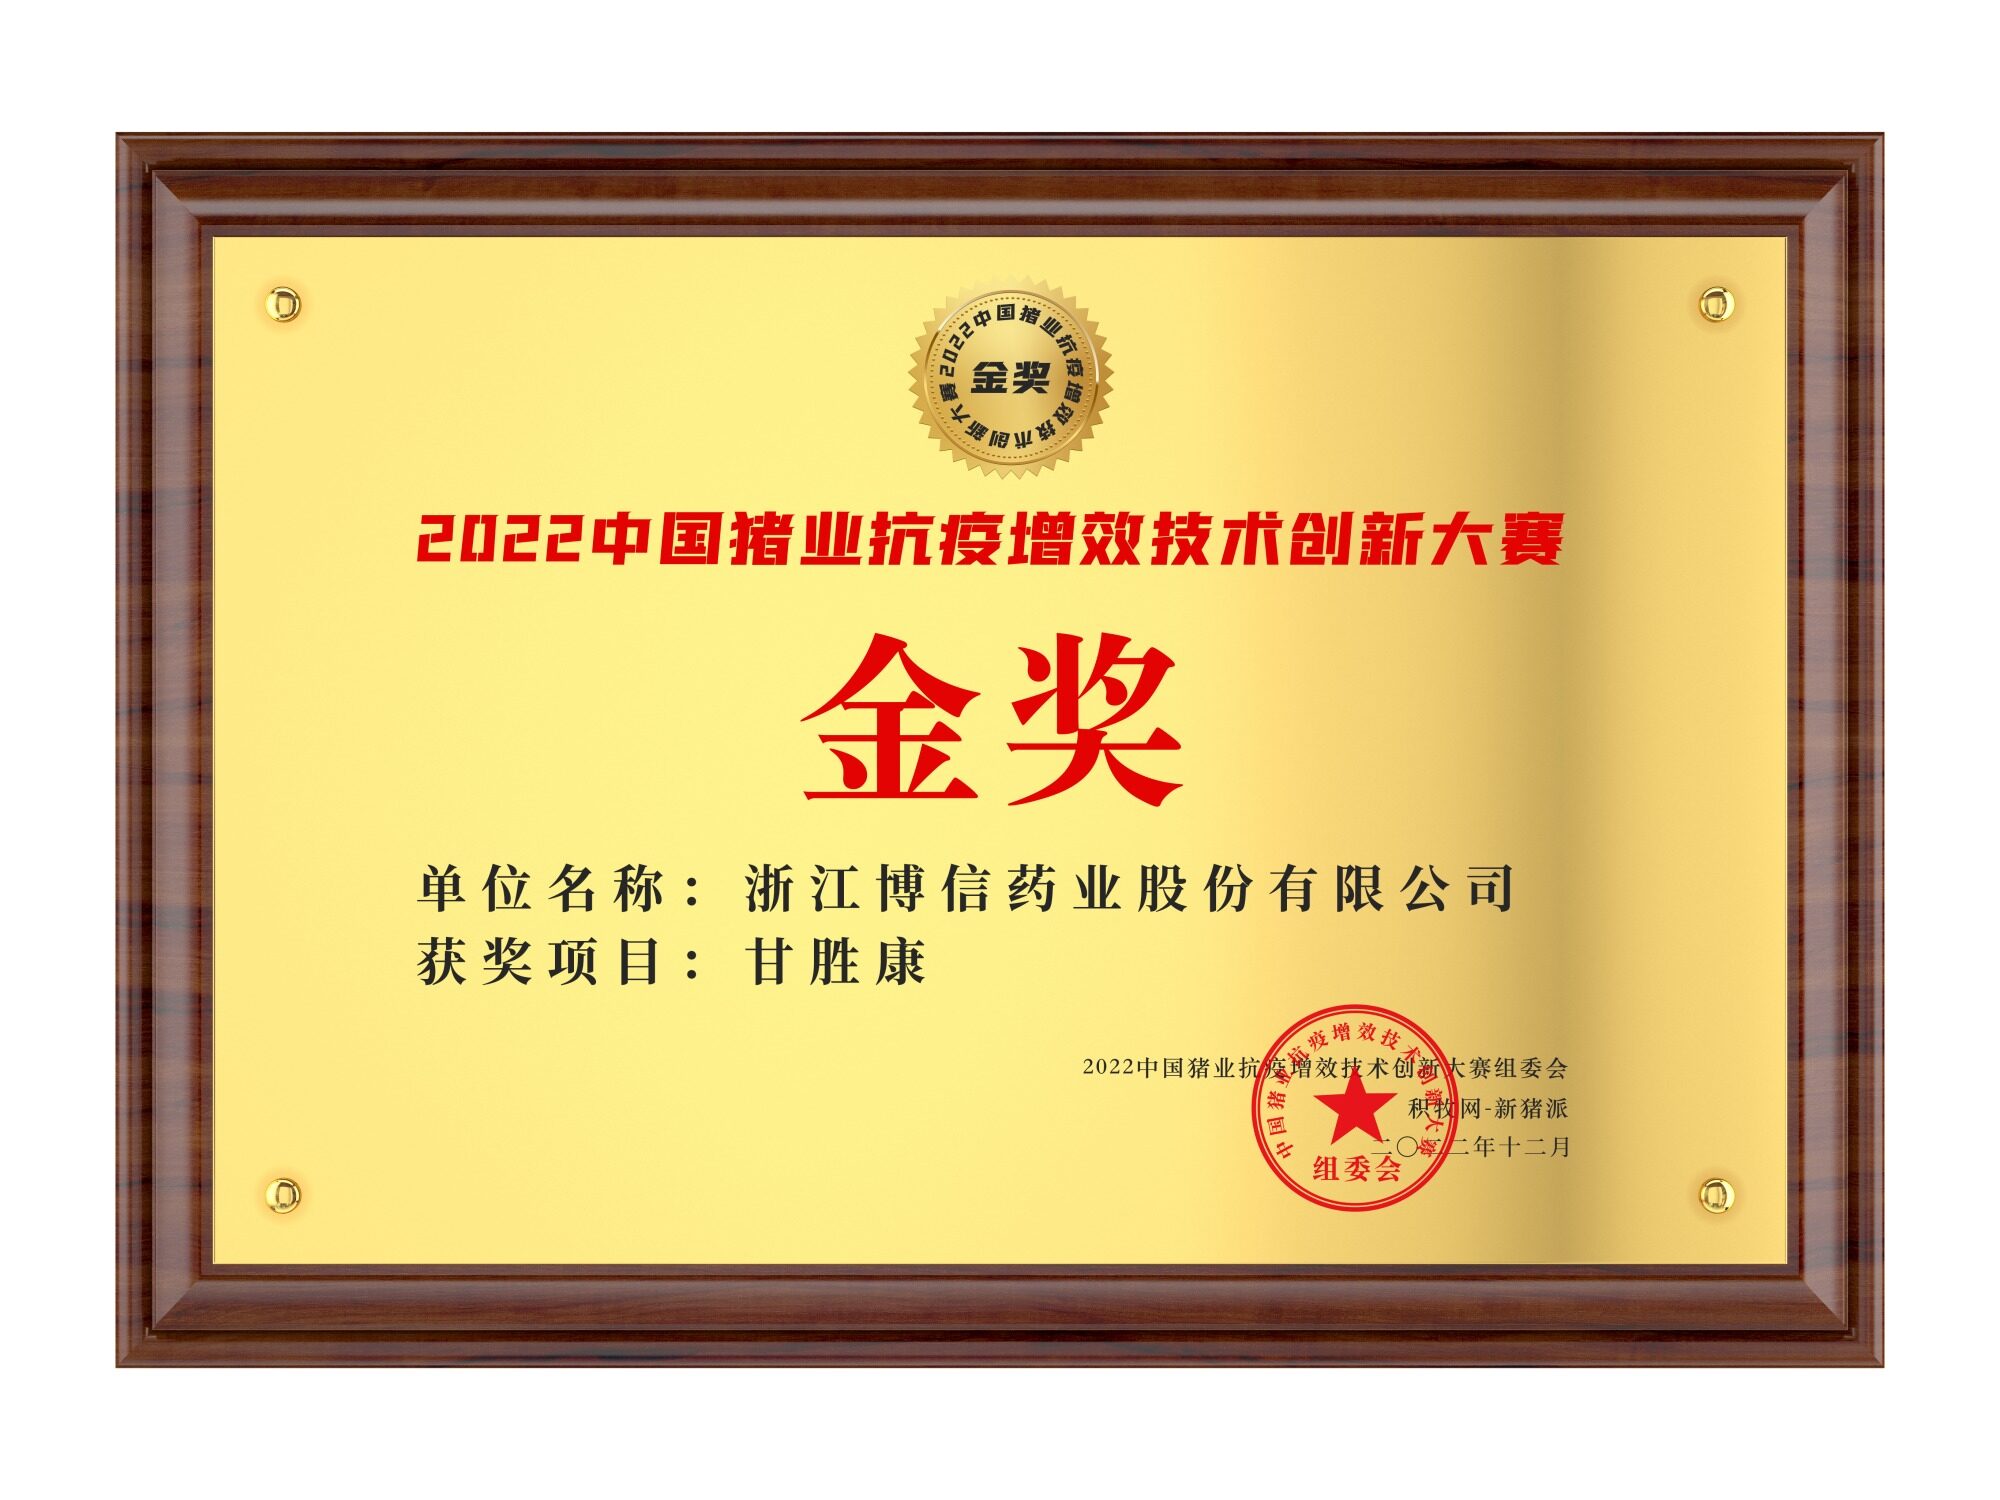 浙江博信【甘胜康】荣获2022中国猪业抗疫增效技术创新大赛(第二季)·金奖